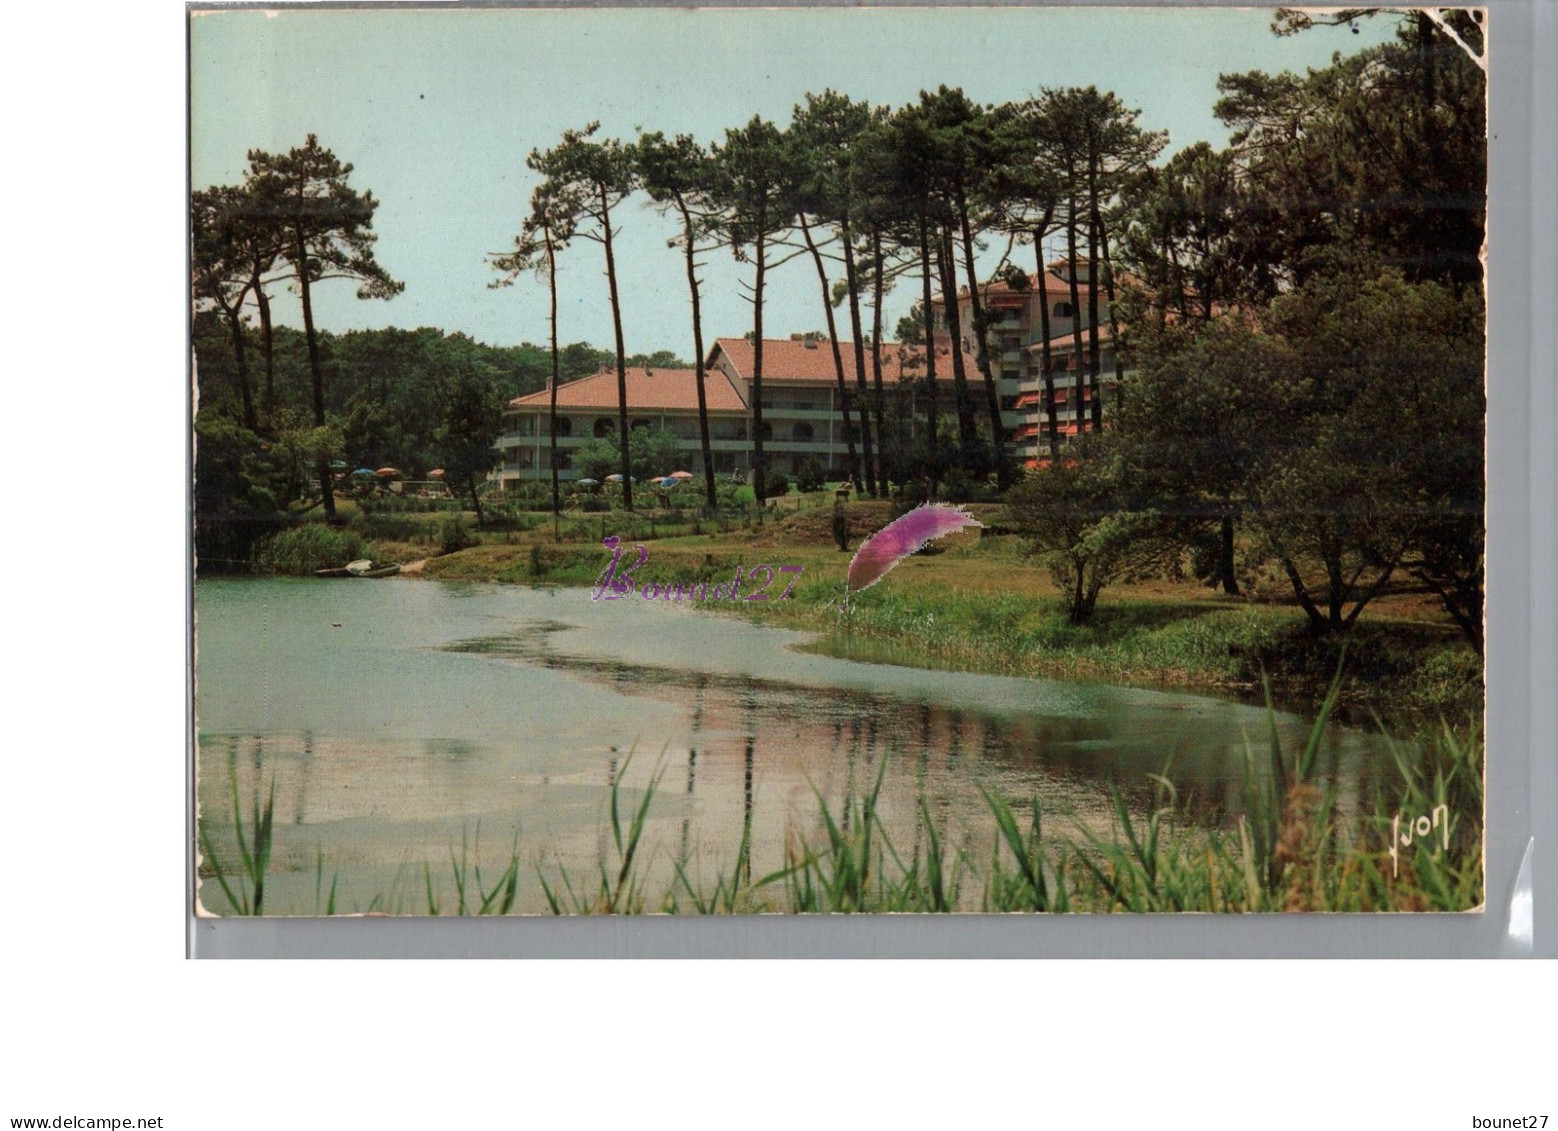 ANGLET 64 - Le Lac De Chiberta Avec L'Hôtel Et Résidence  - Anglet